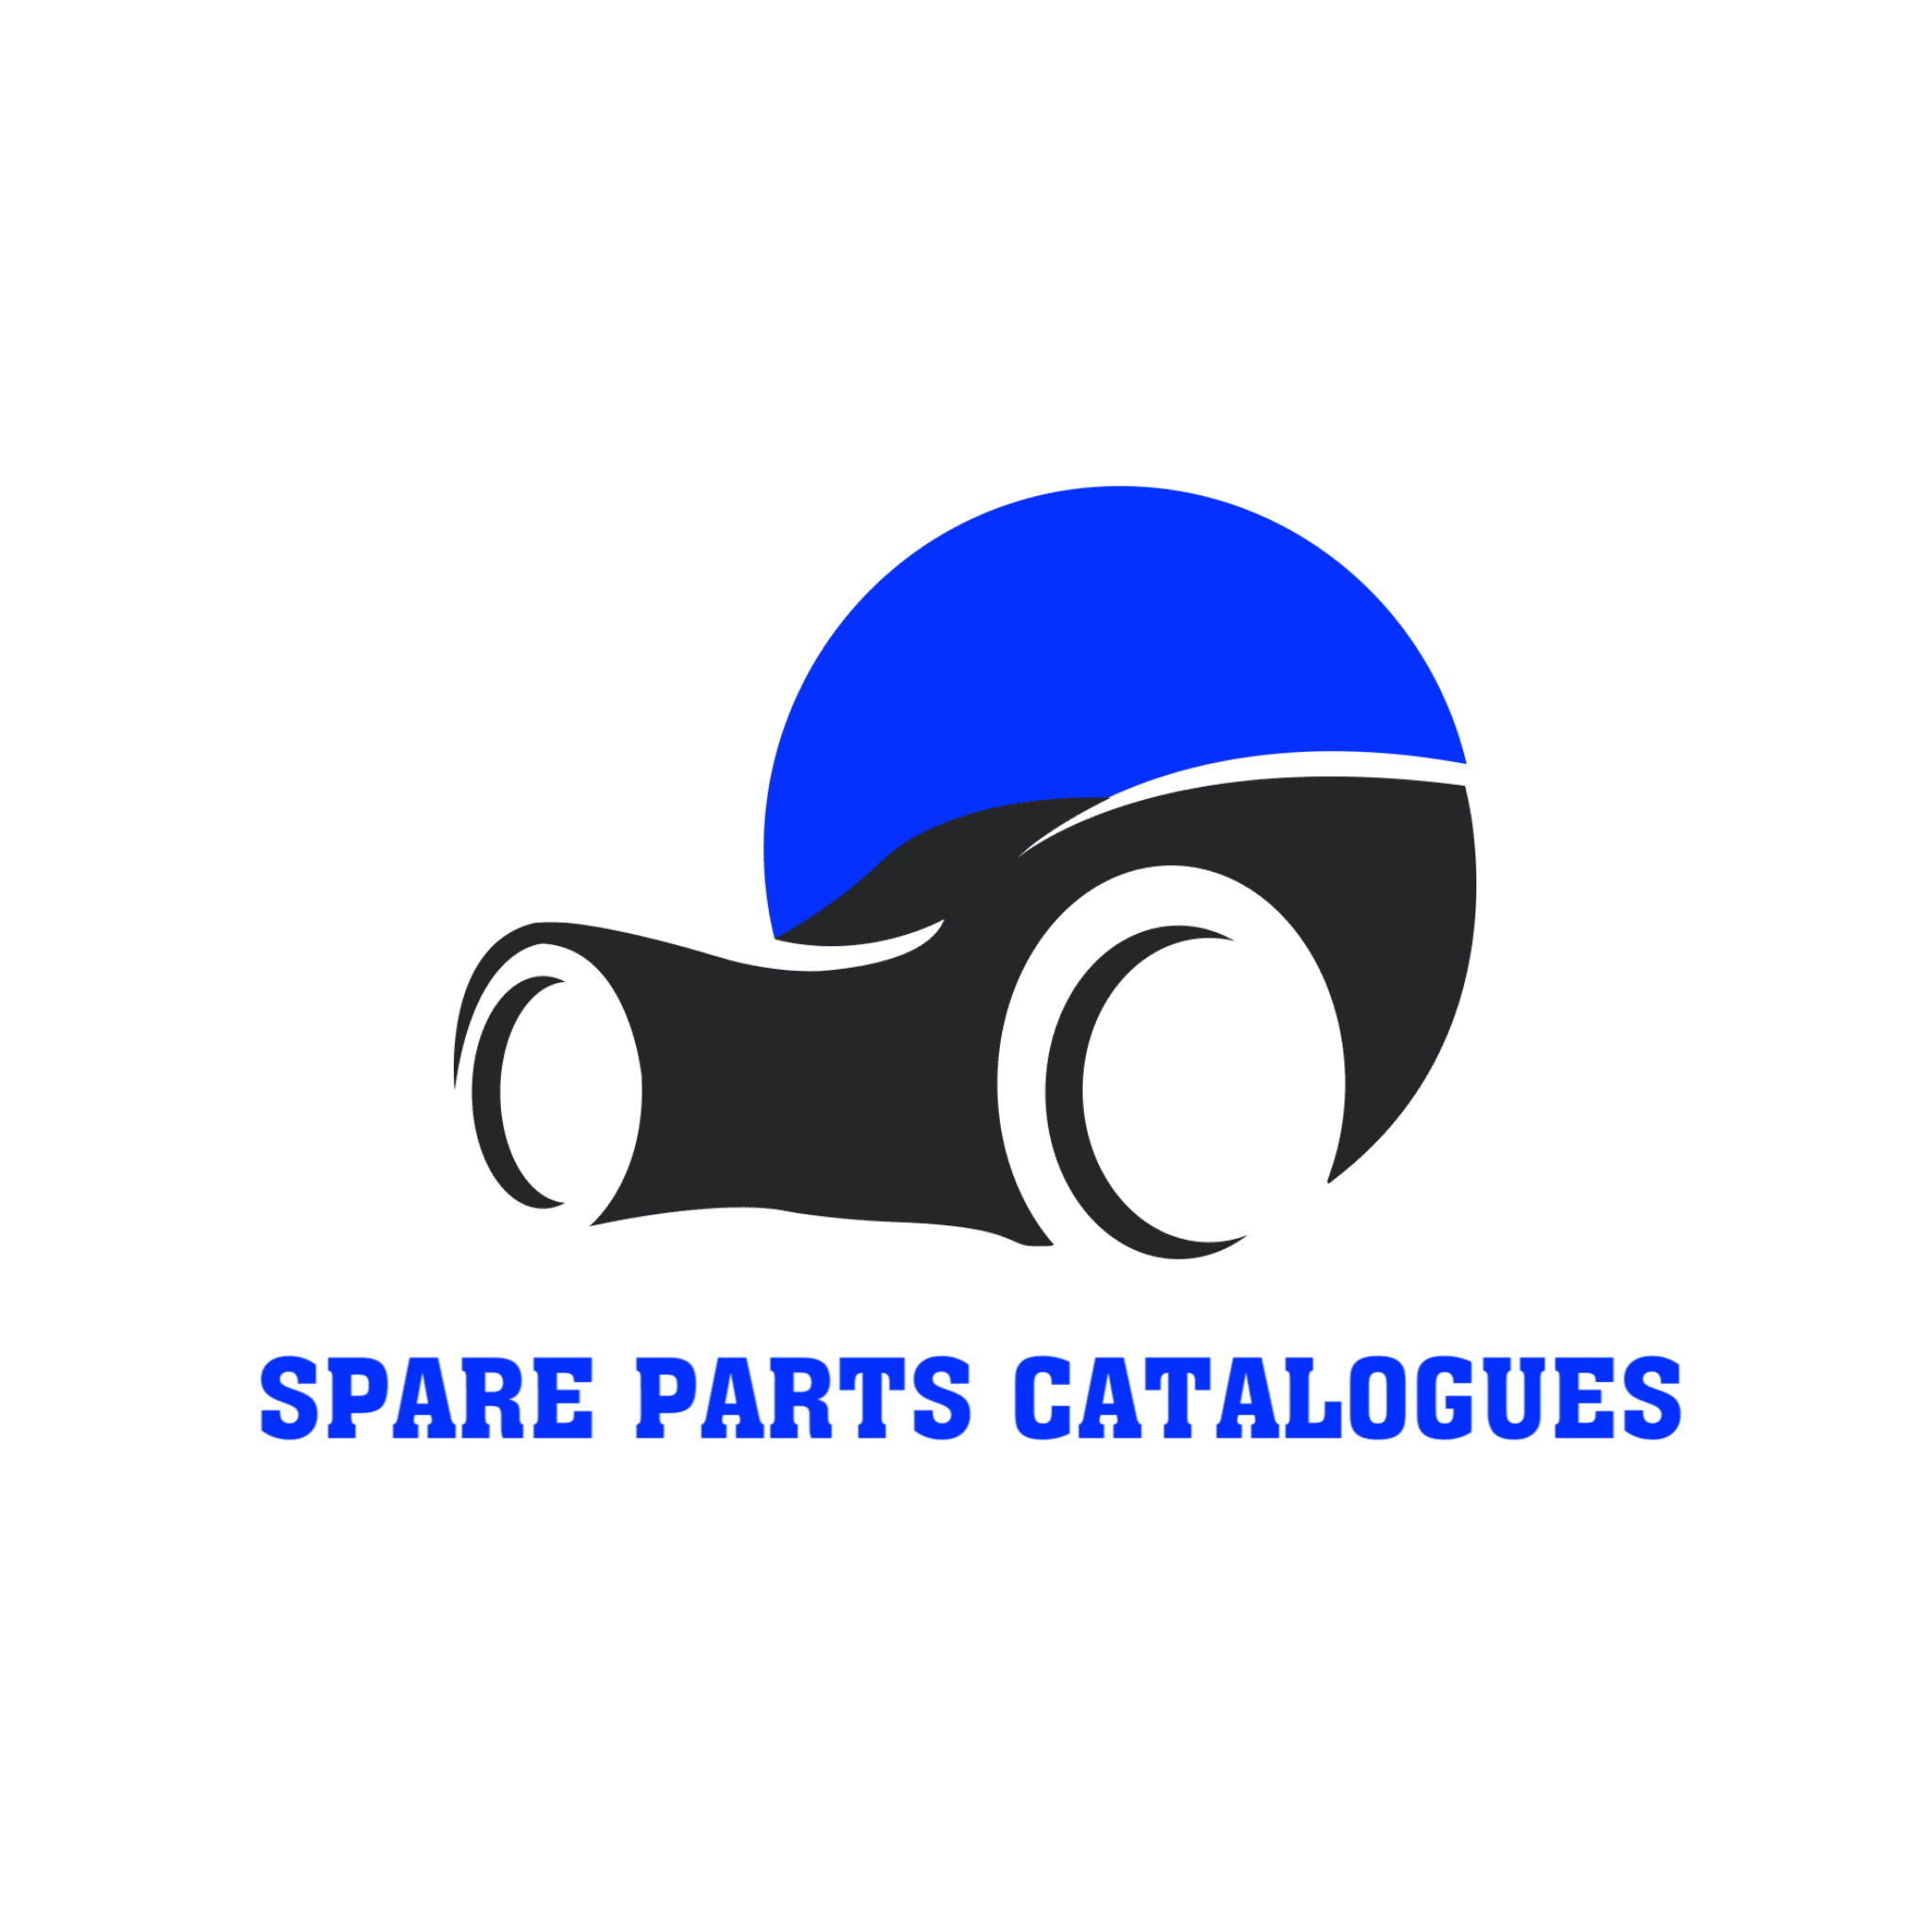 Spare Parts Catalogs